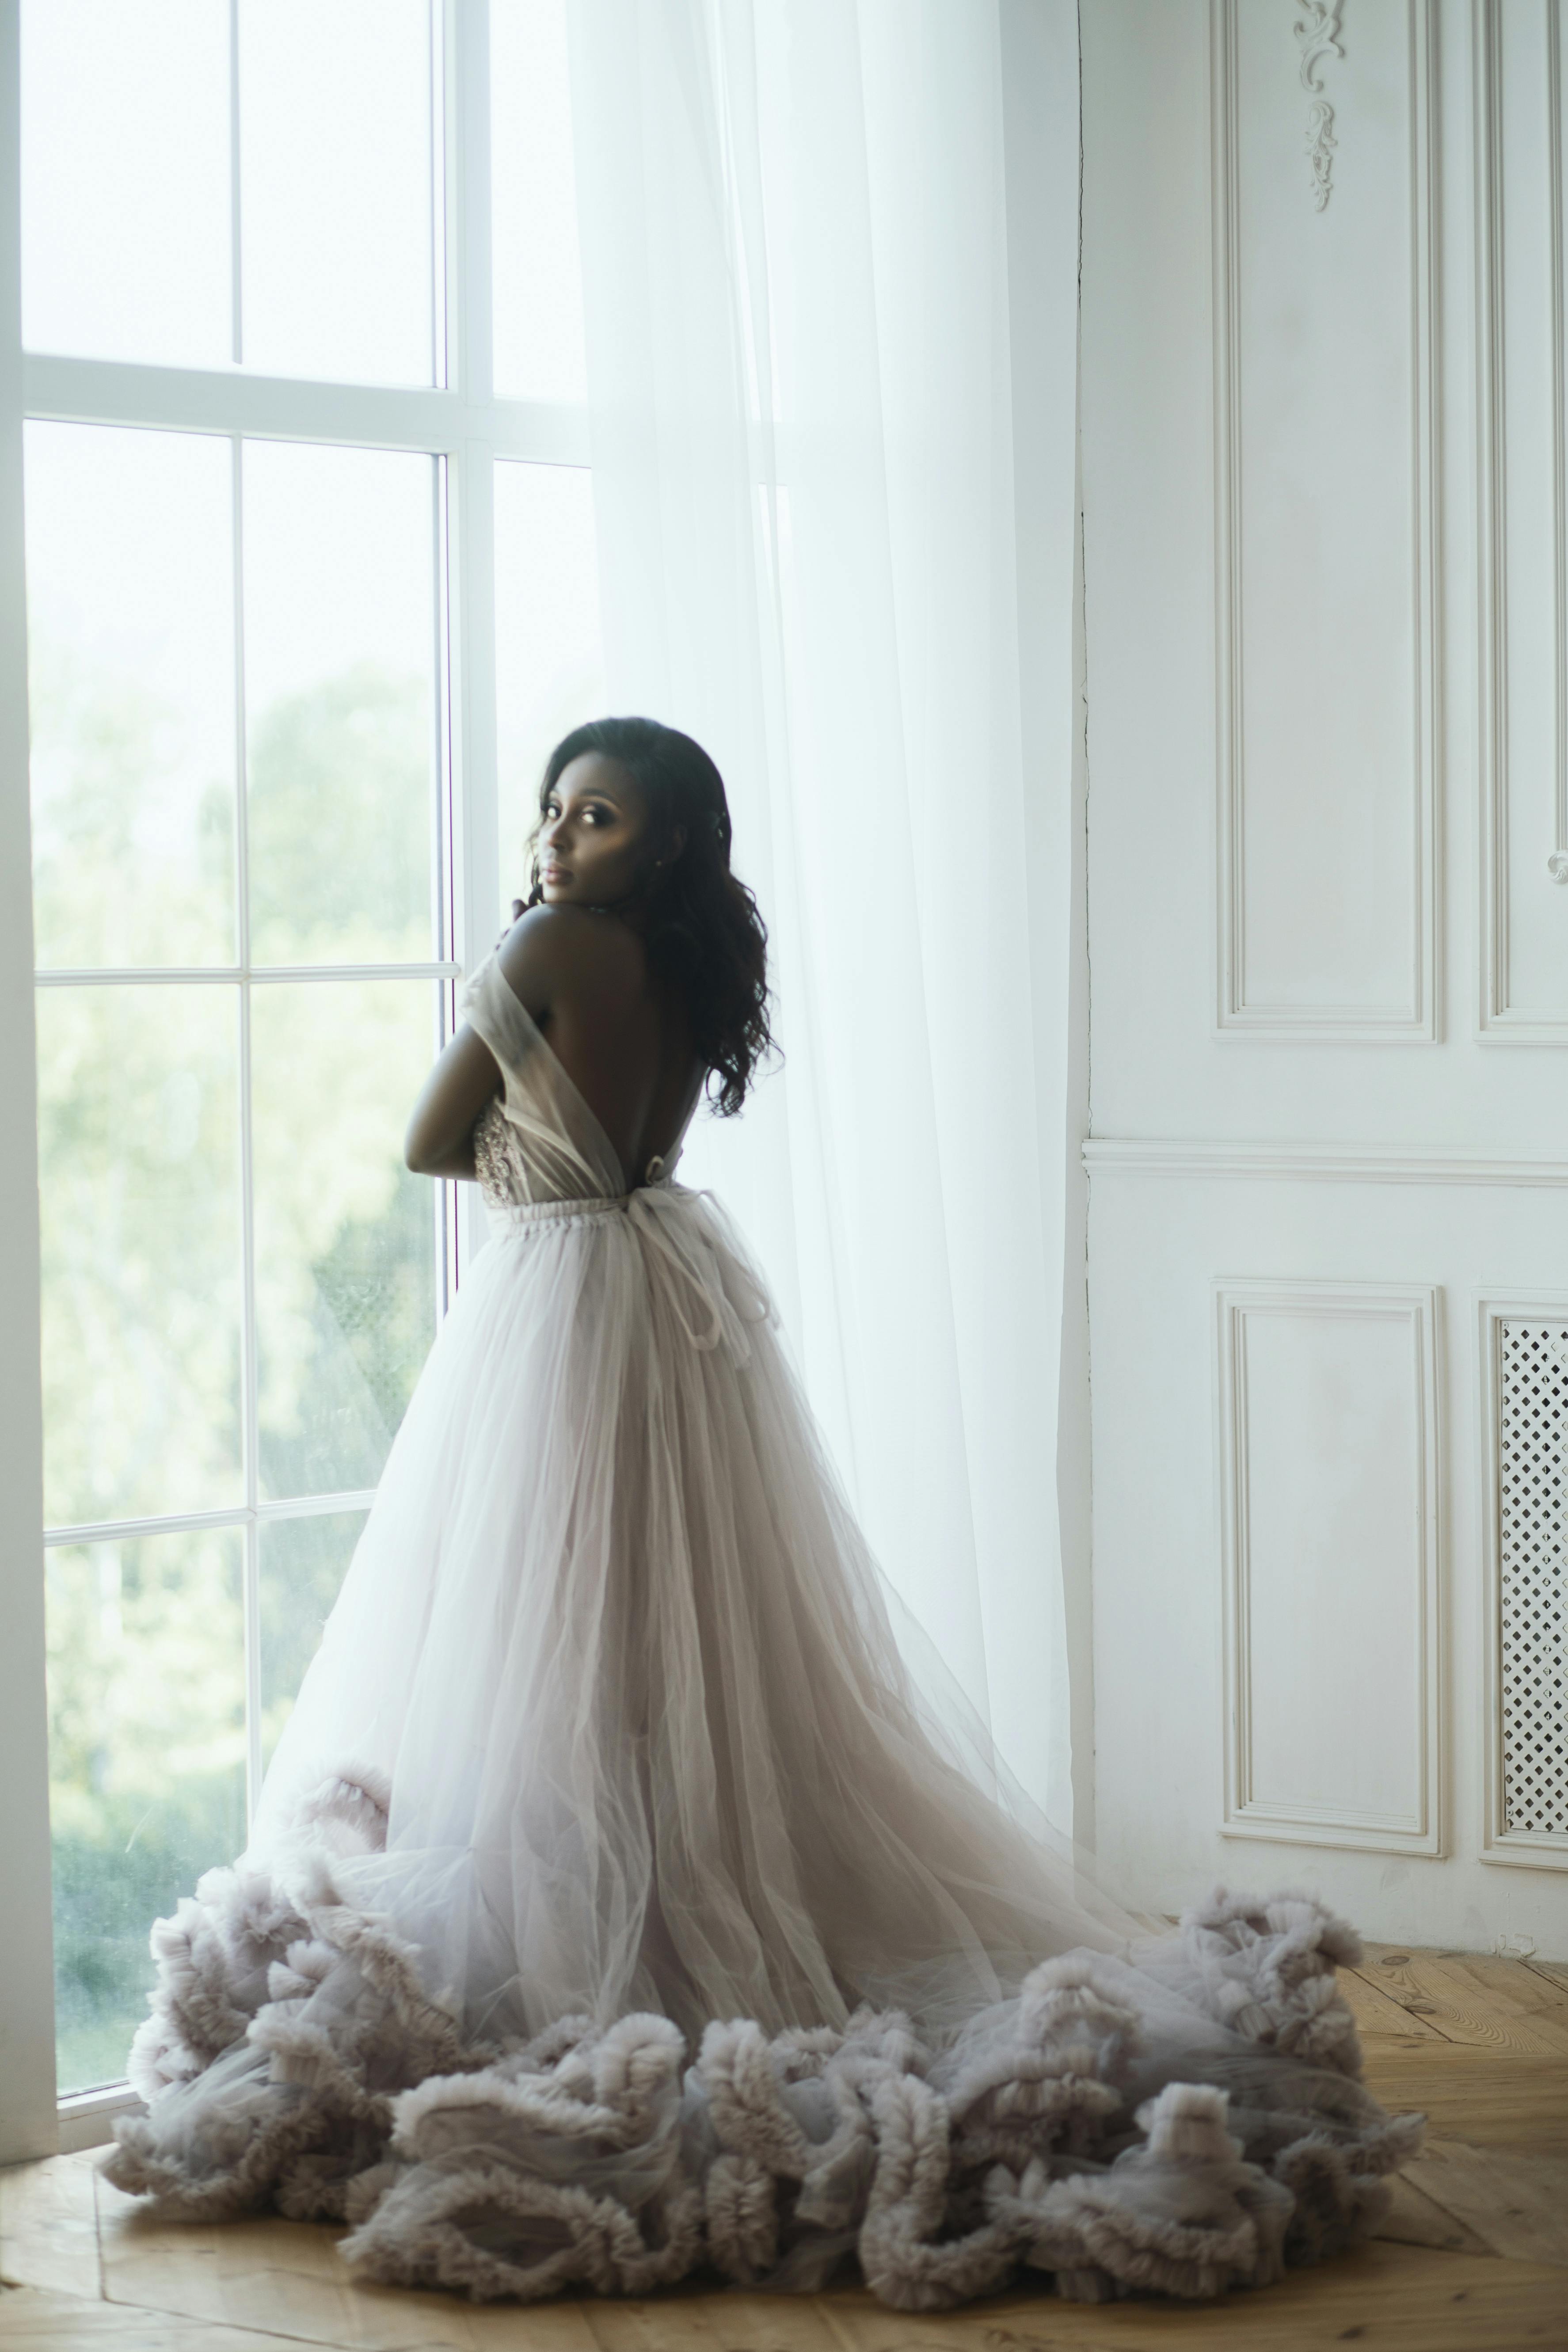 À des fins d'illustration uniquement. Une femme debout à une fenêtre en robe de mariée regarde l'appareil photo | Source : Pexels